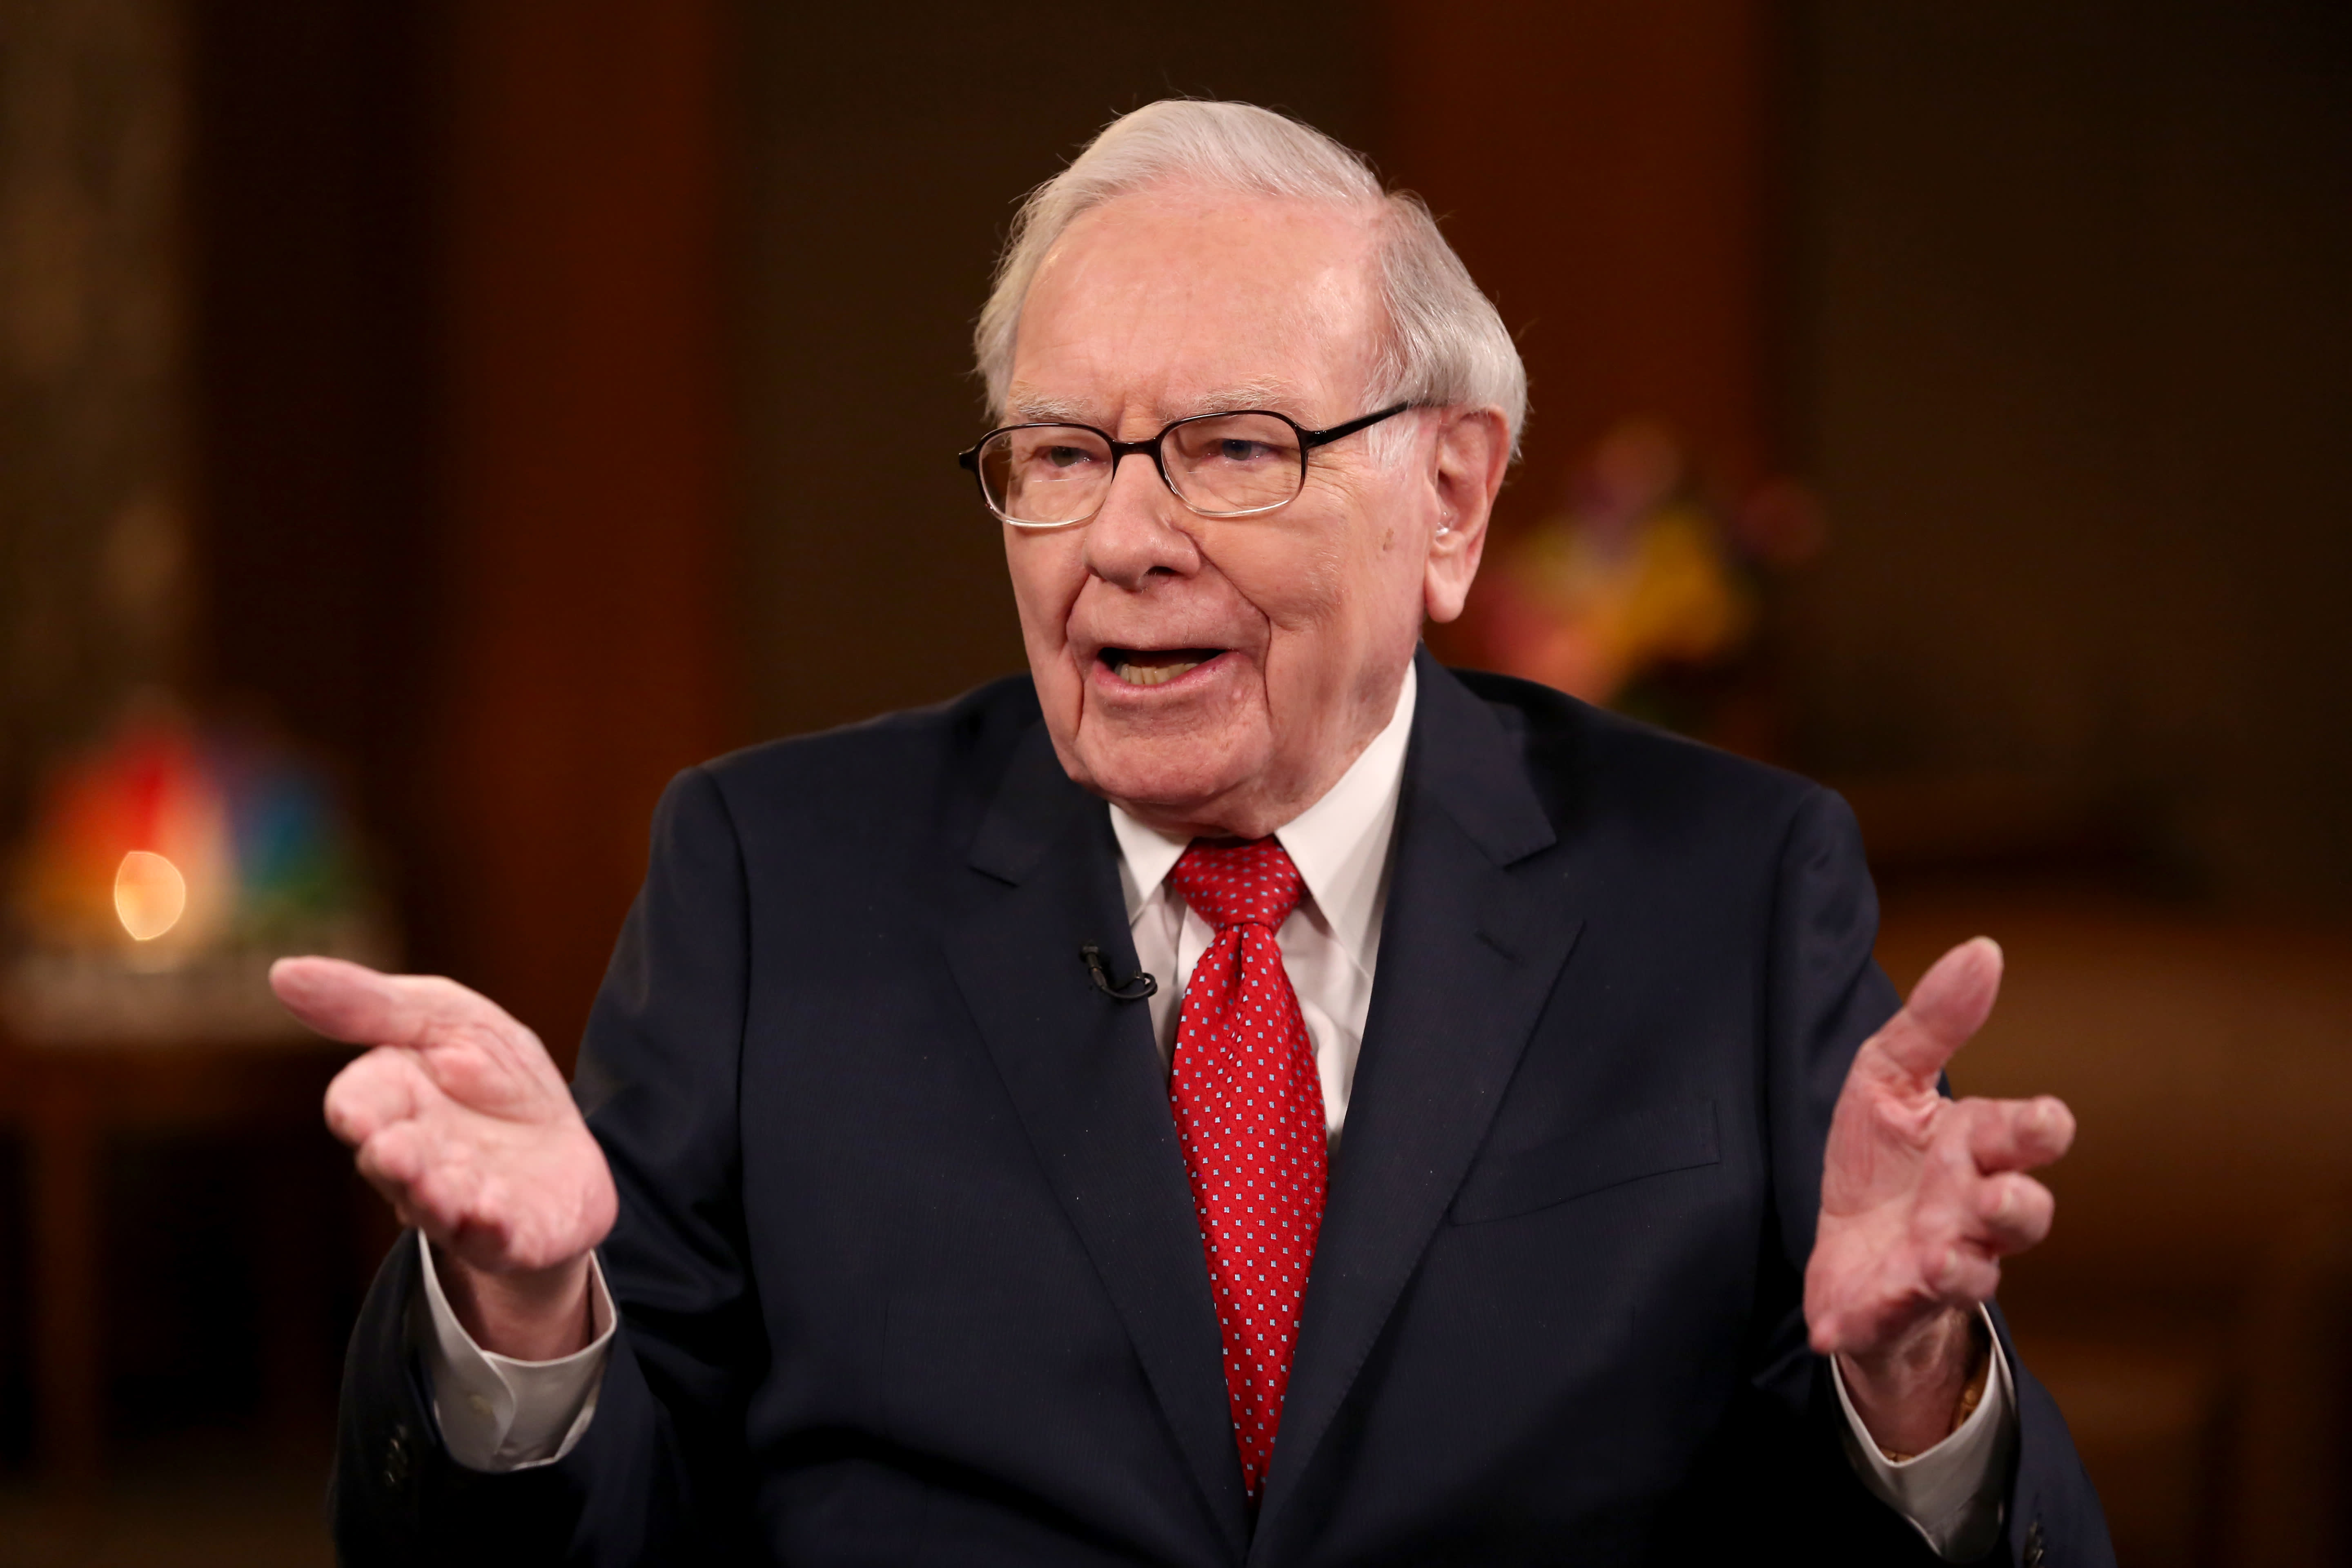 Warren Buffett's now worth over $100 billion: How he spends his money